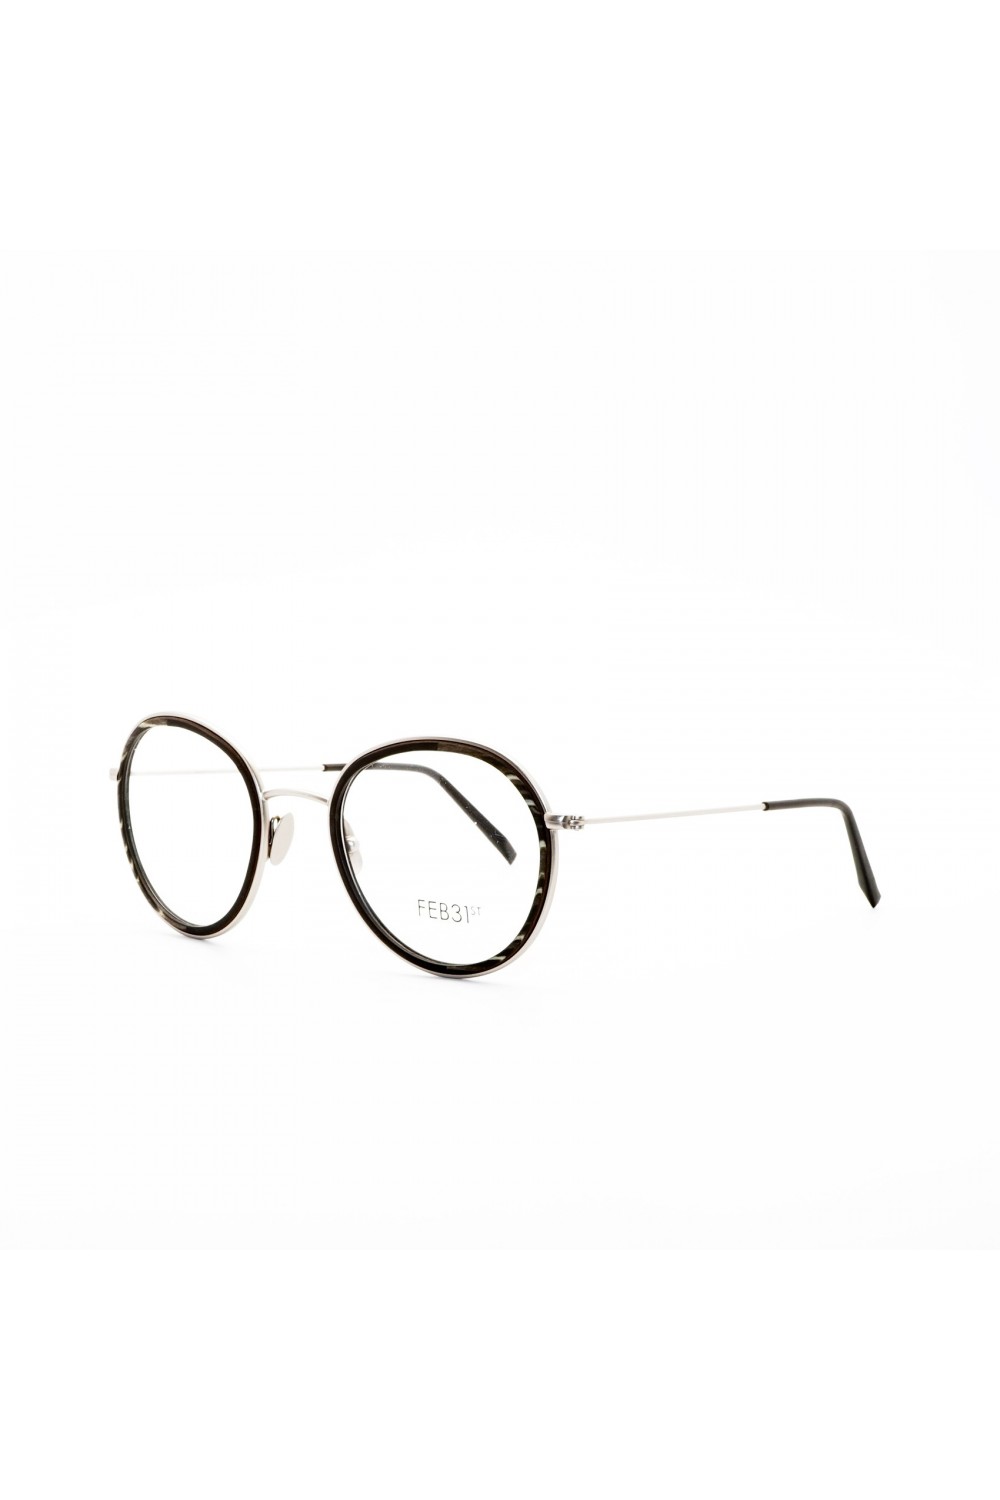 Feb 31st - Occhiali da vista in legno tondi unisex nero, silver - CRI